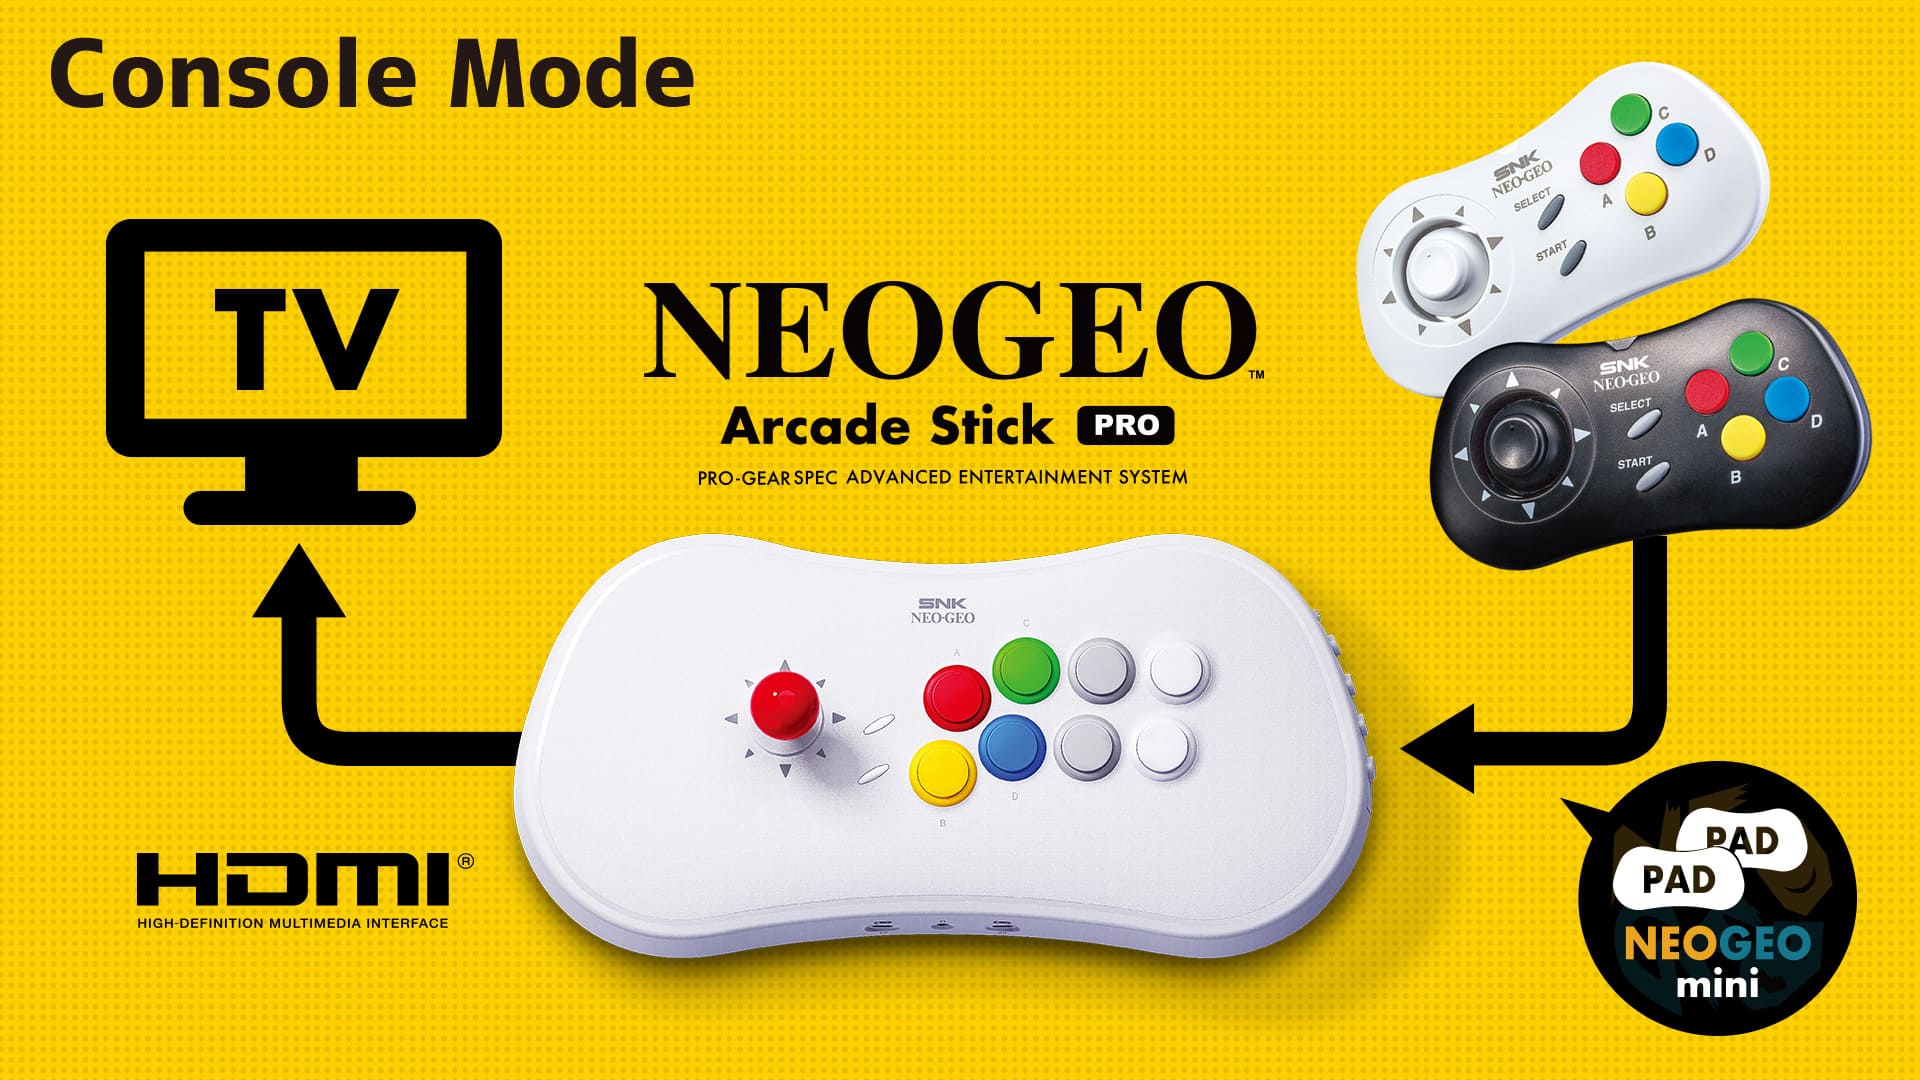 NEOGEO Arcade Stick Pro 控制台模式